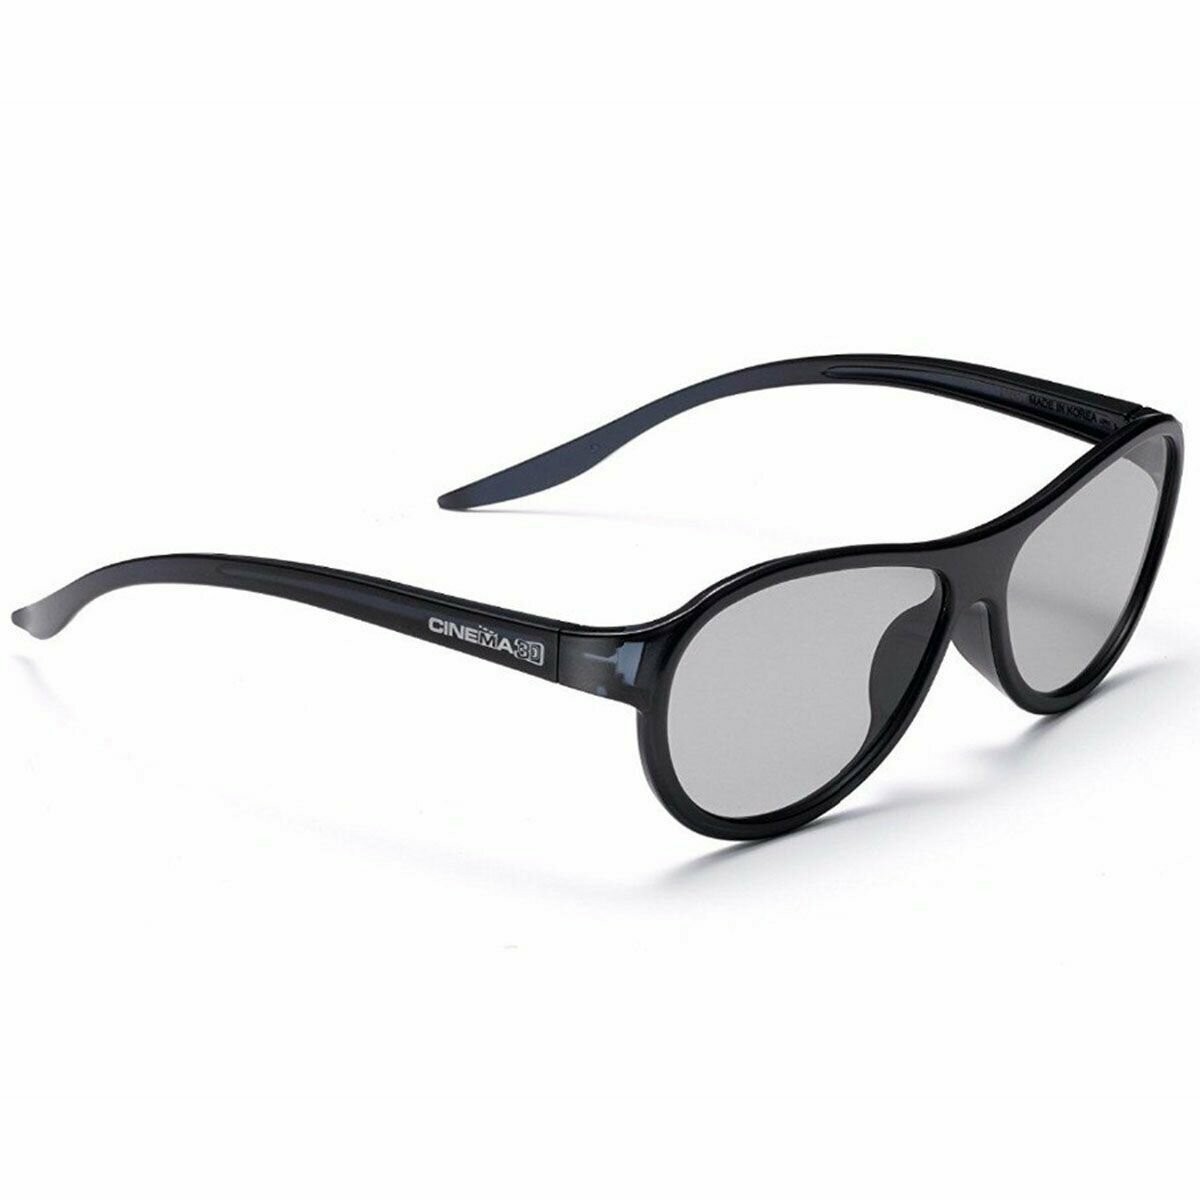 3D очки LG AG-F310 черные для телевизоров с пассивным типом 3D универсальные для кинотеатра